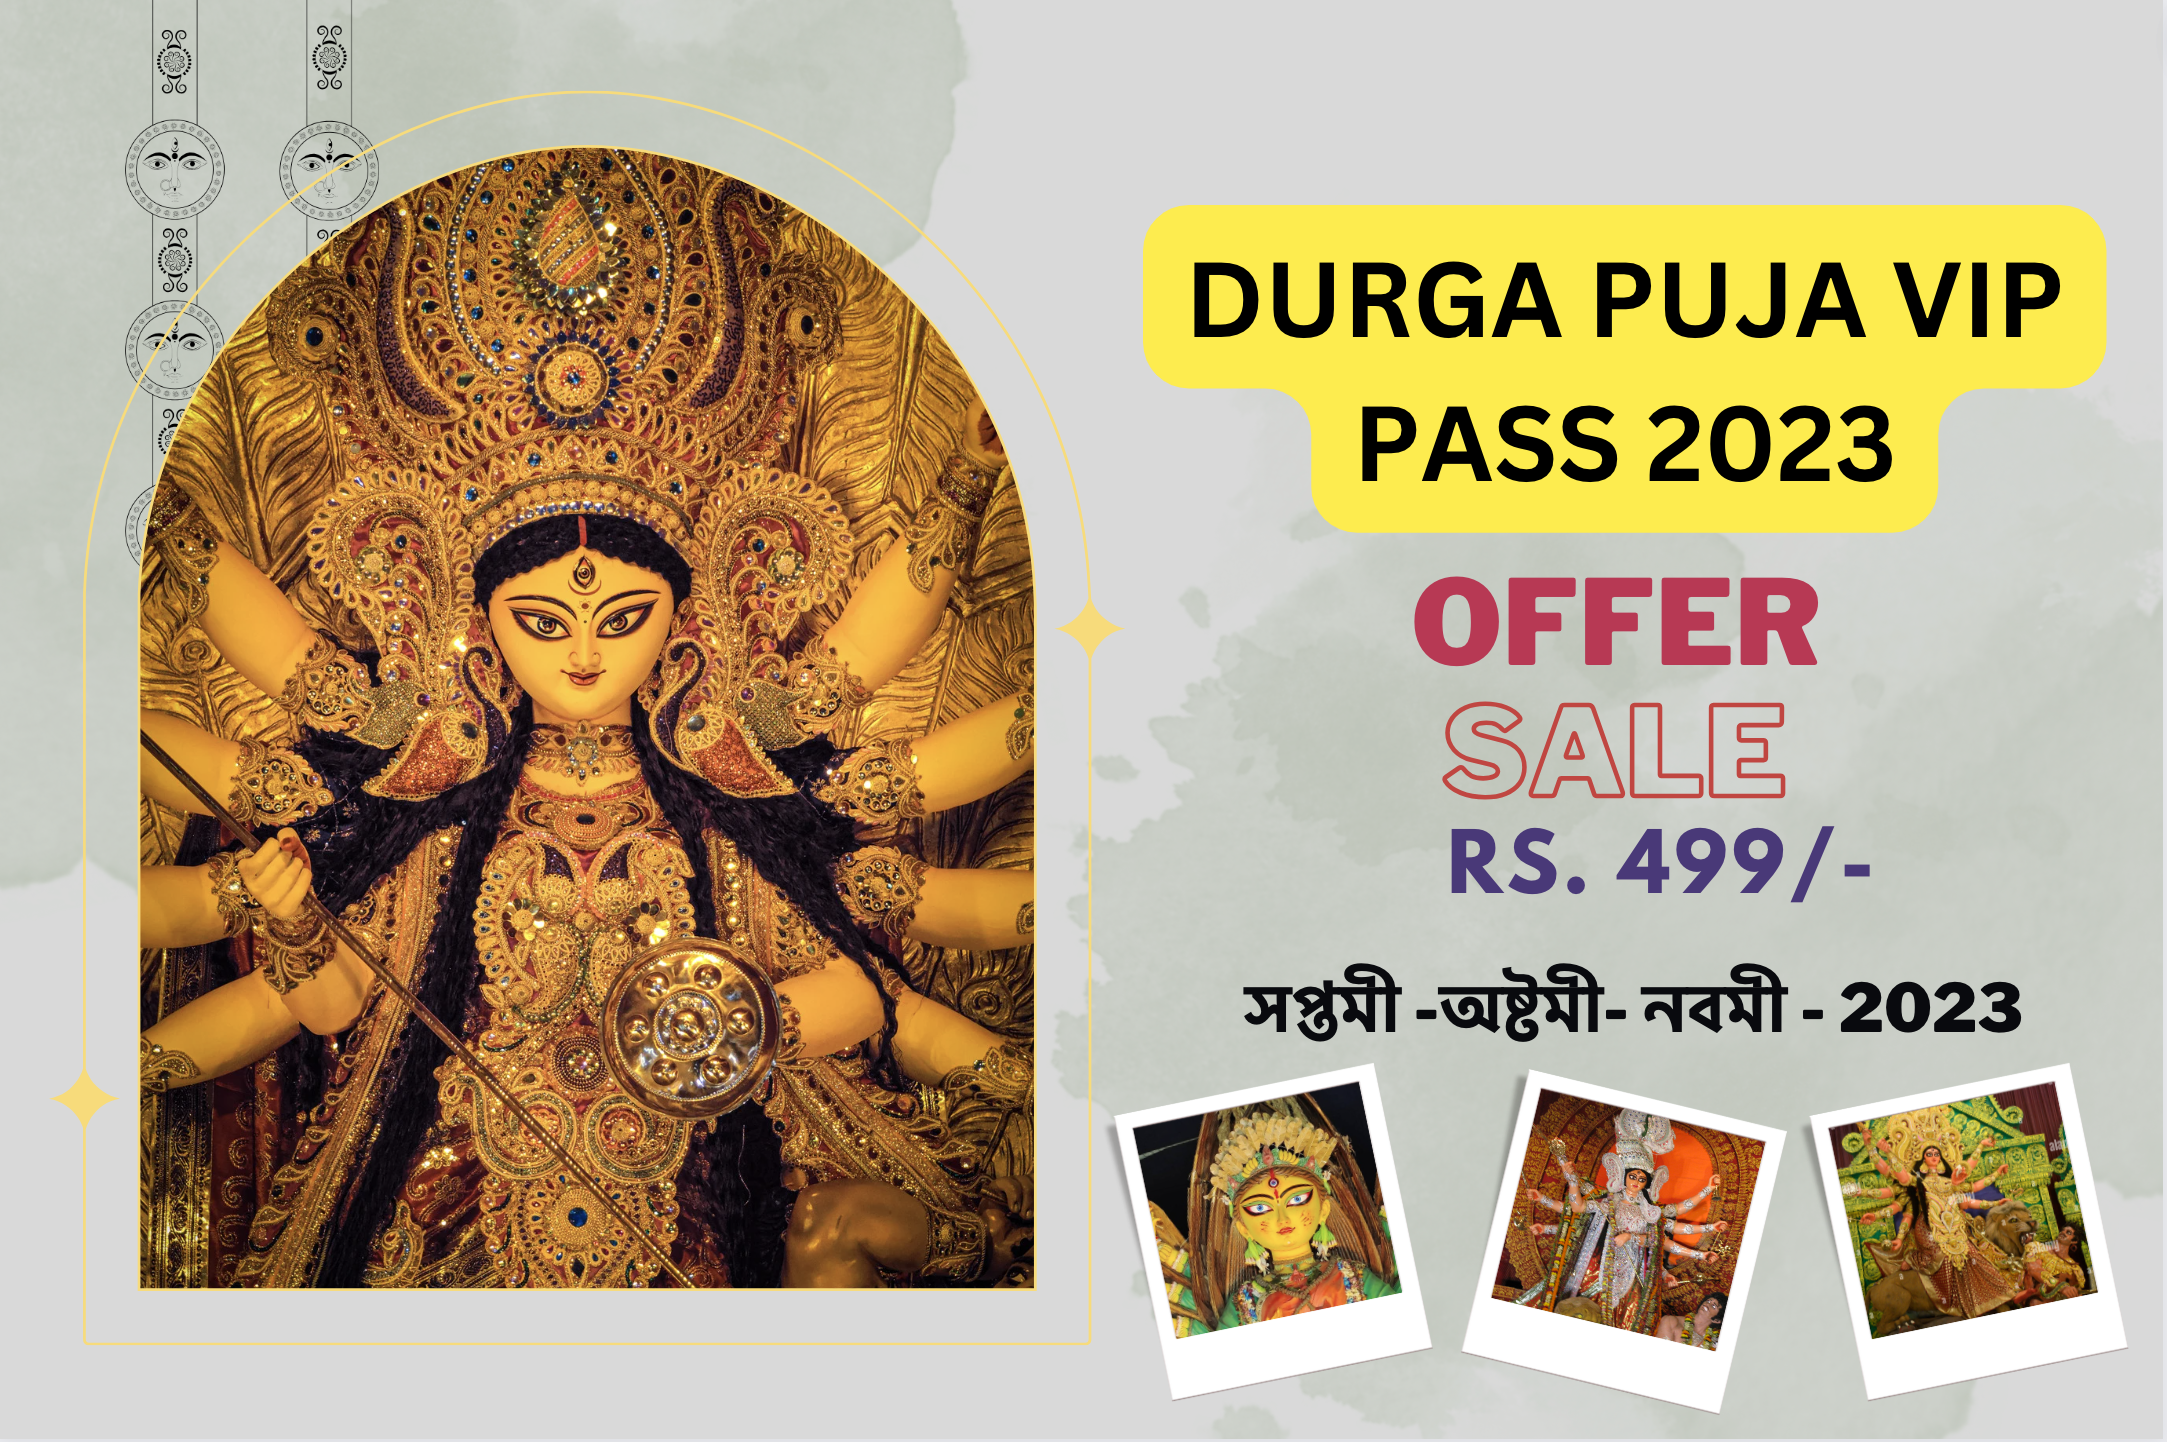 Durga Puja Vip pass